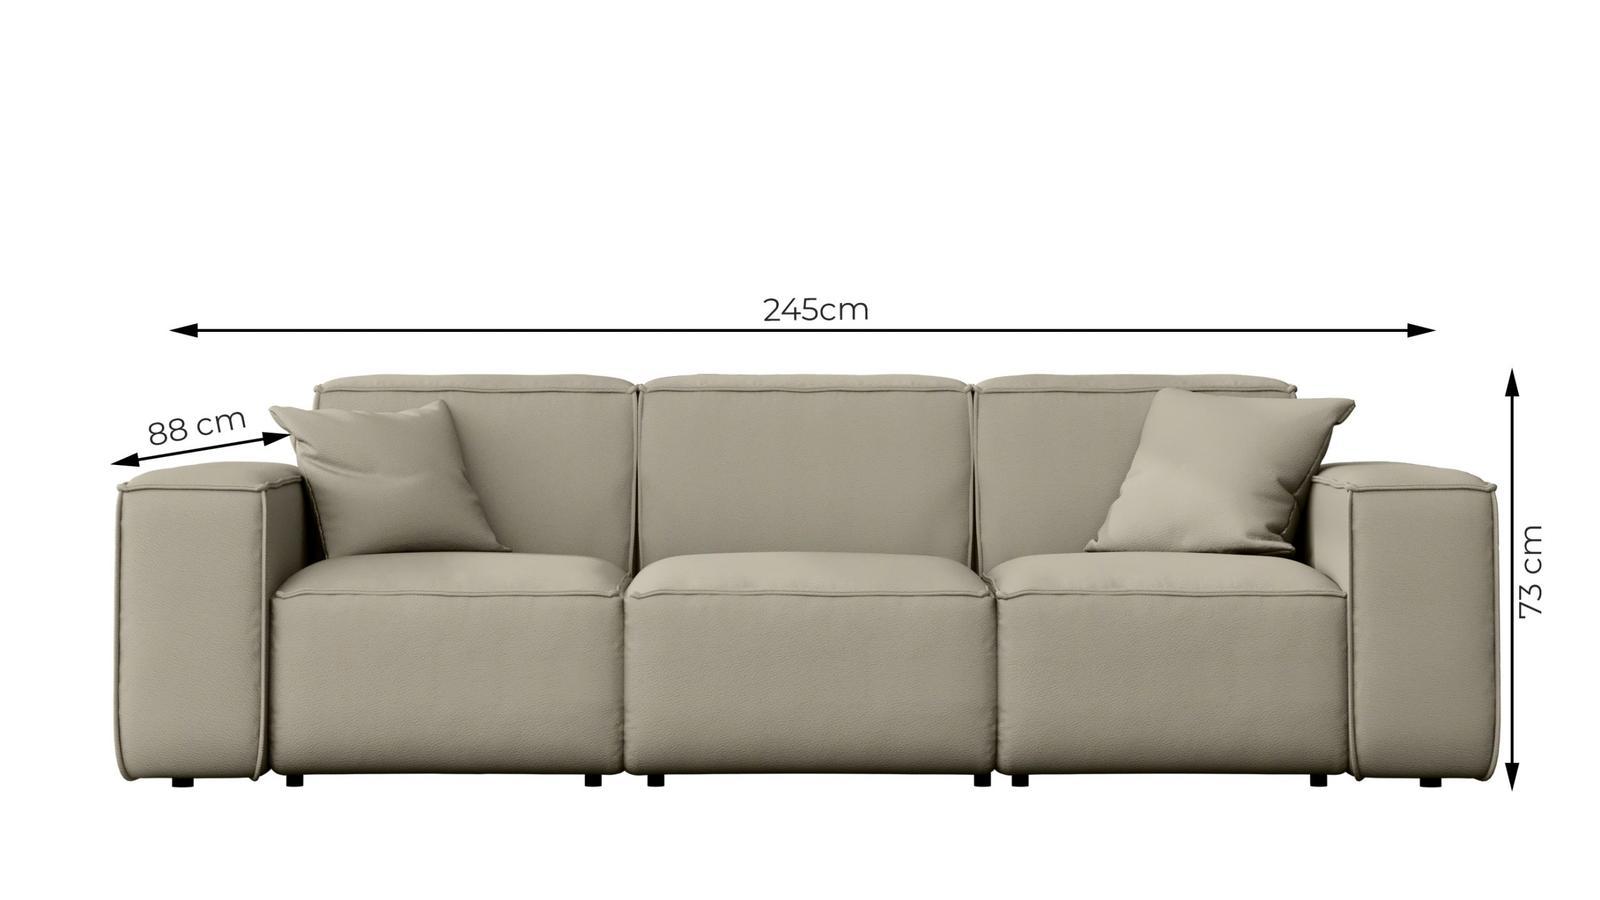 Sofa ogrodowa MALIBU 245x103x88 cm wodoodporna UV 3-os + 2 poduszki do ogrodu antracyt nr. 3